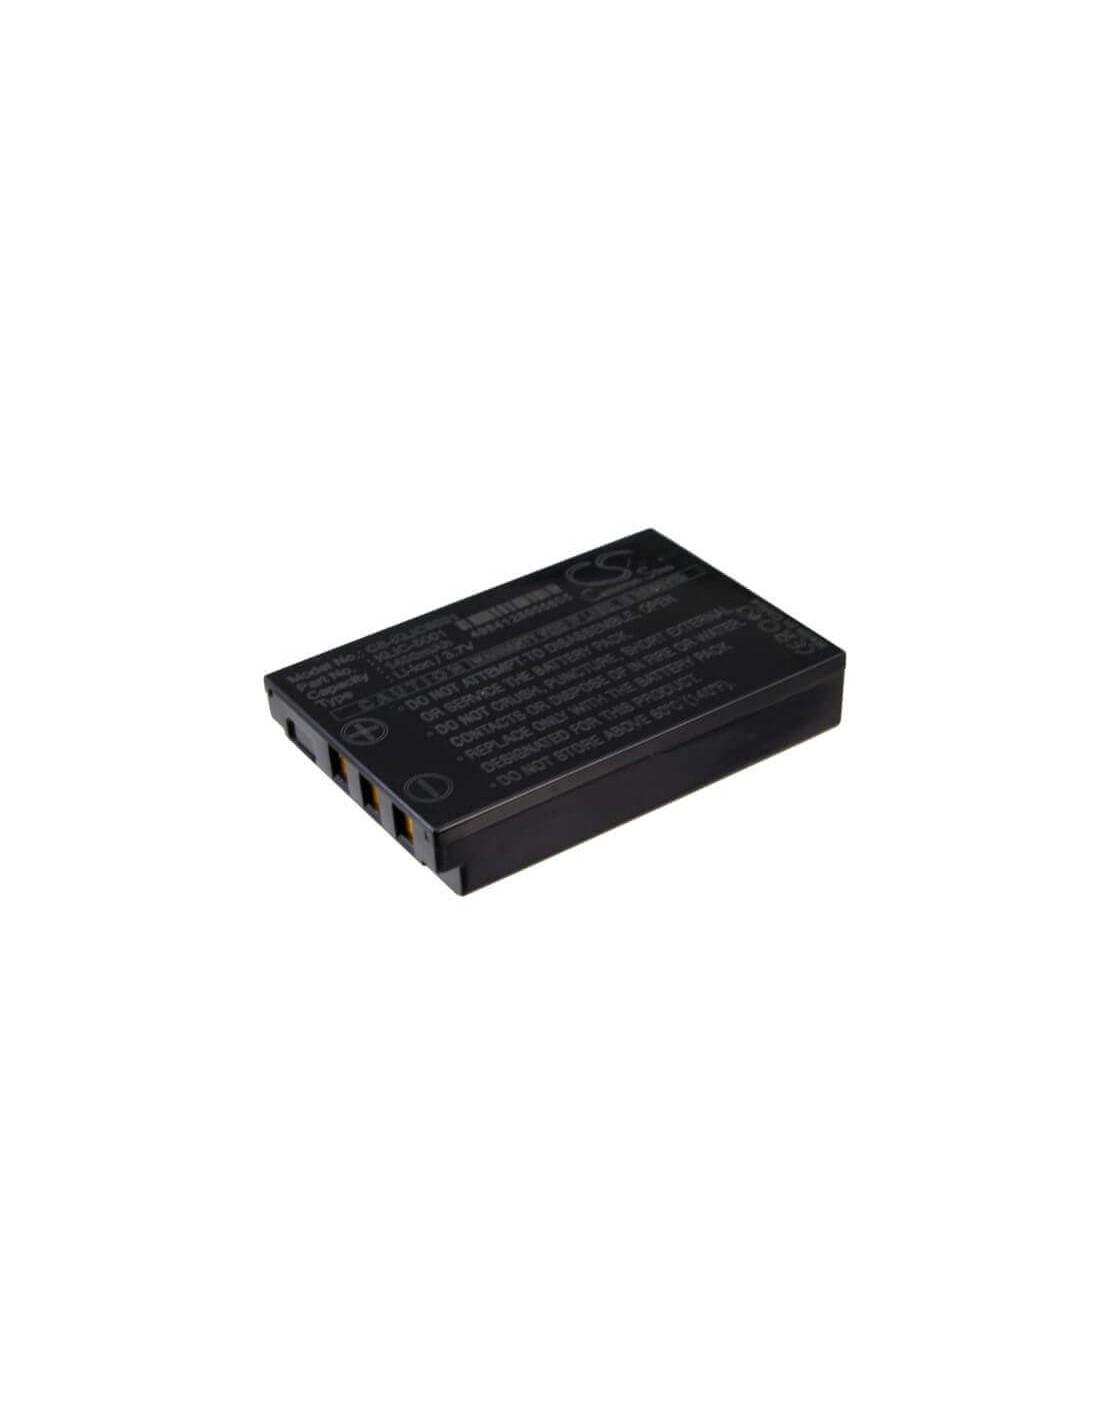 Battery for Kodak Easyshare Dx6490, Easyshare Dx7440, 3.7V, 1400mAh - 5.18Wh